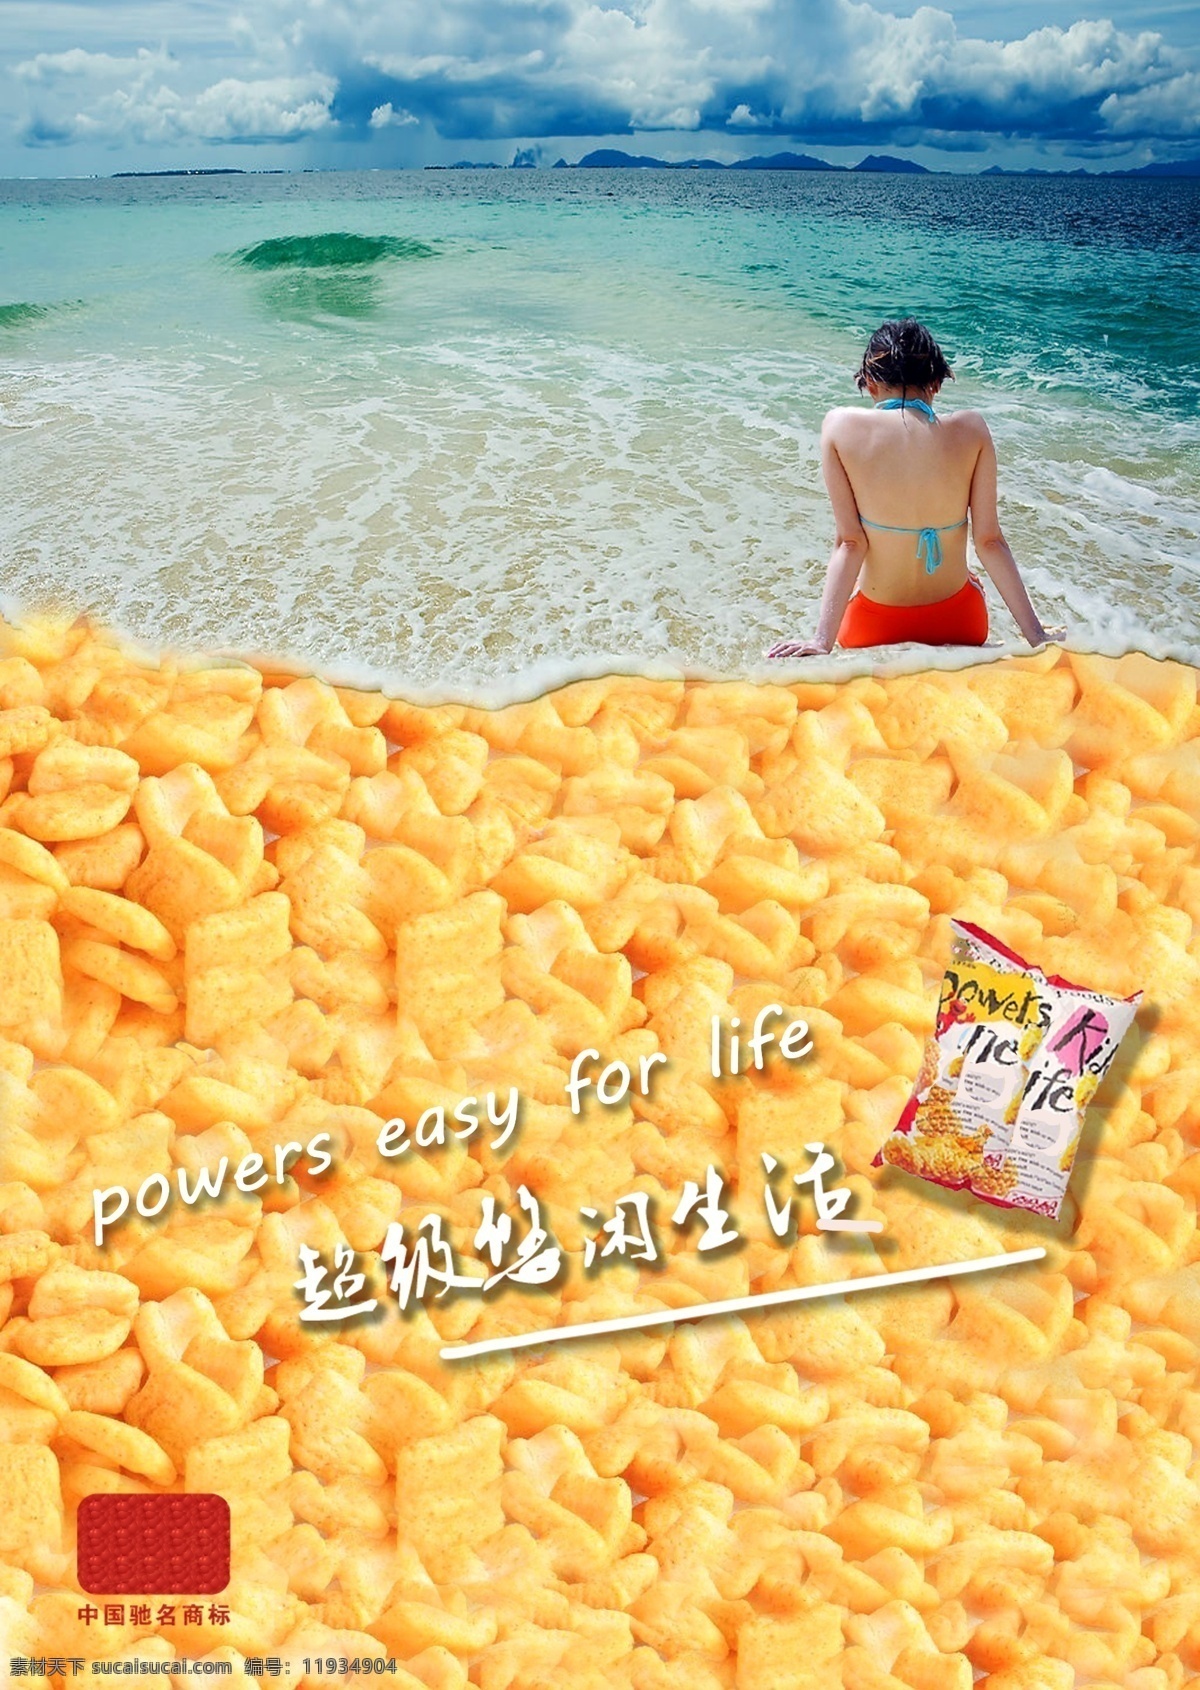 膨化食品 宣传海报 广告设计模板 海滩 零食 美女 小吃 源文件 宣传单 彩页 dm